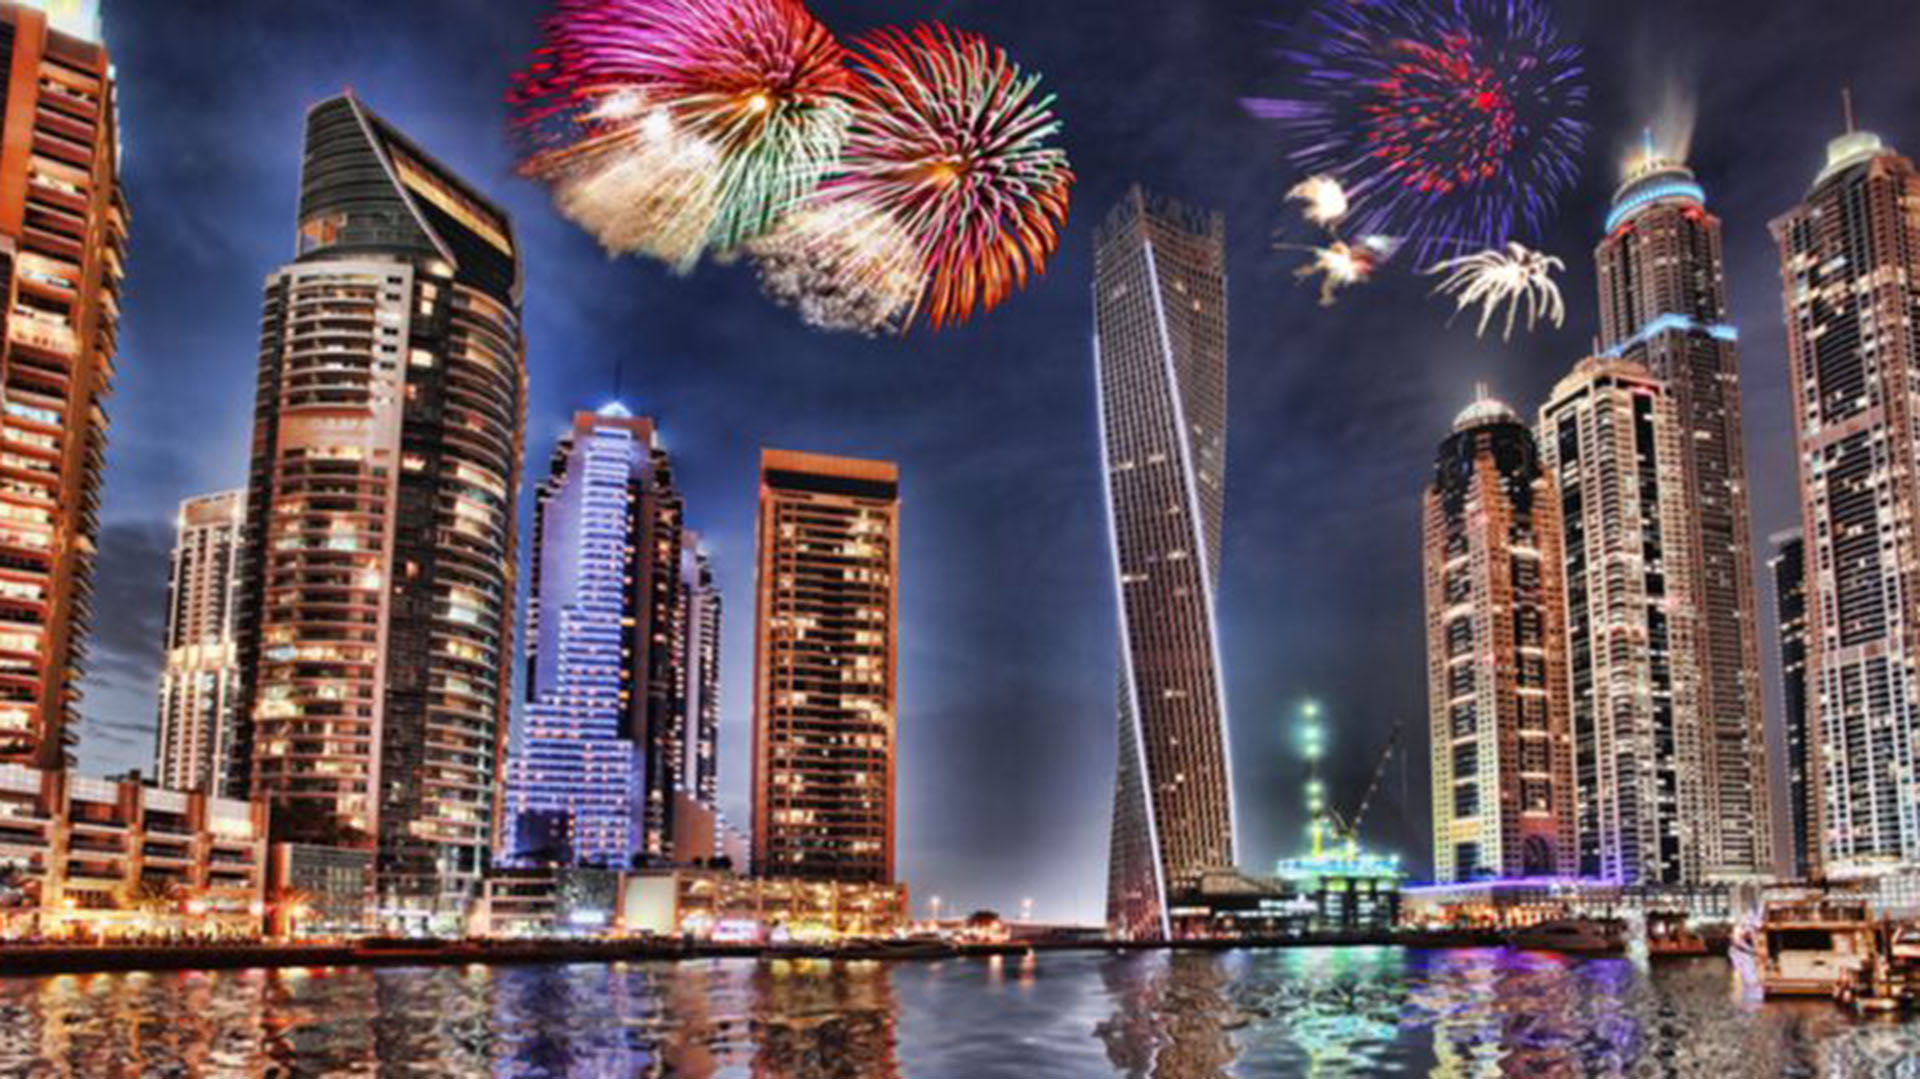 La zona más popular de la ciudad para celebrar año nuevo es el barrio de Downtown Dubai, donde se podrán presenciar los fuegos artificiales